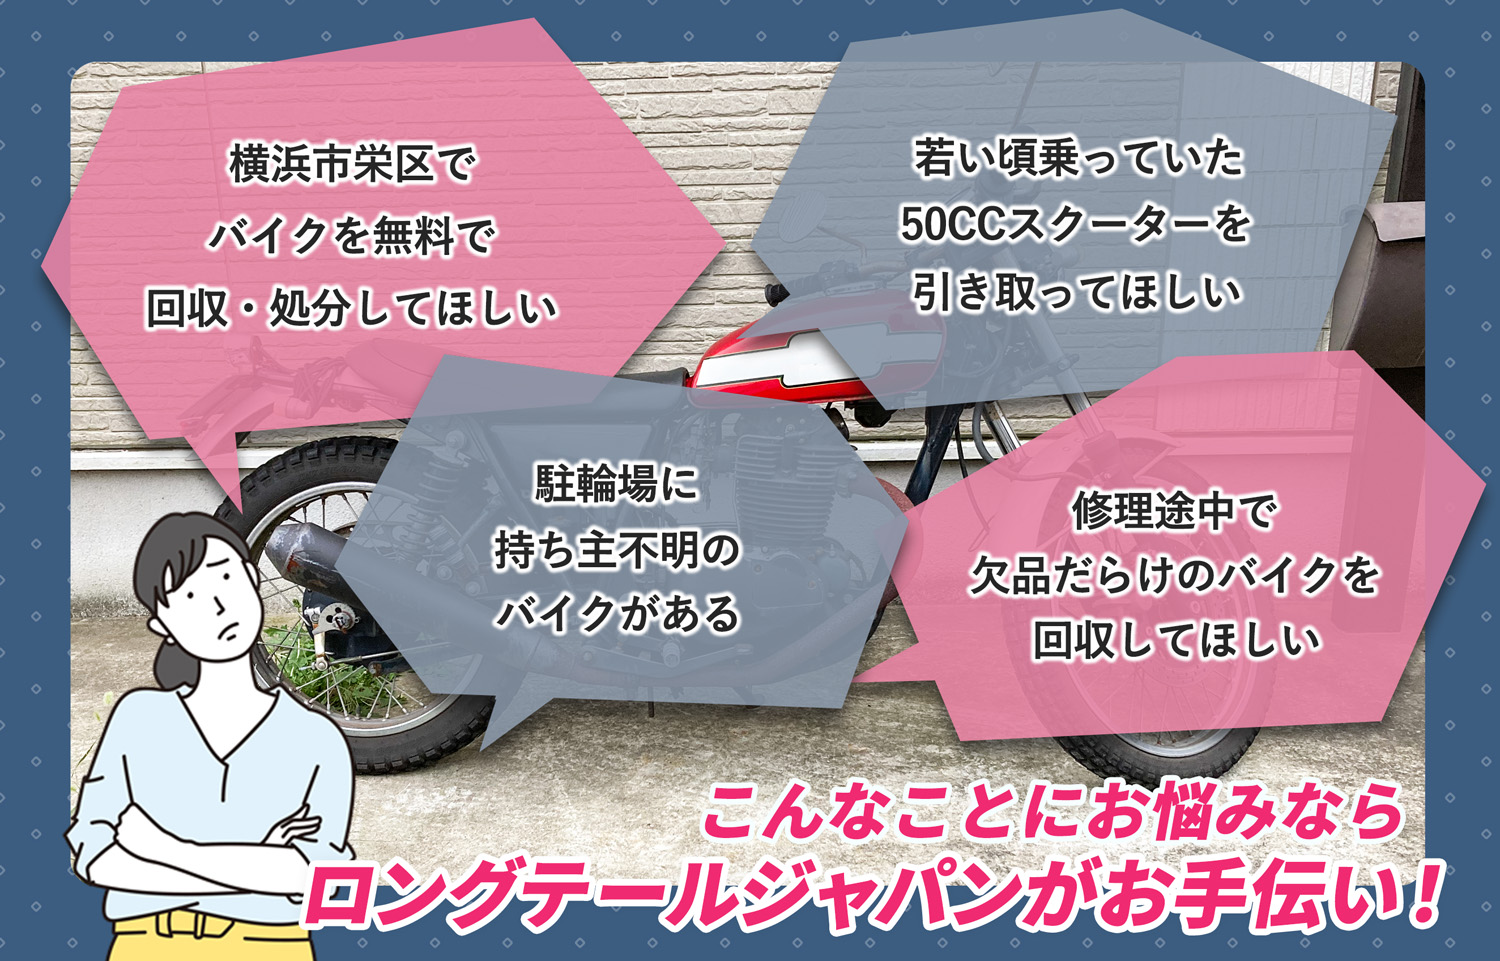 横浜市栄区でこんなバイクの処分にお困りでしたらバイク無料回収処分隊がお手伝いいたします。